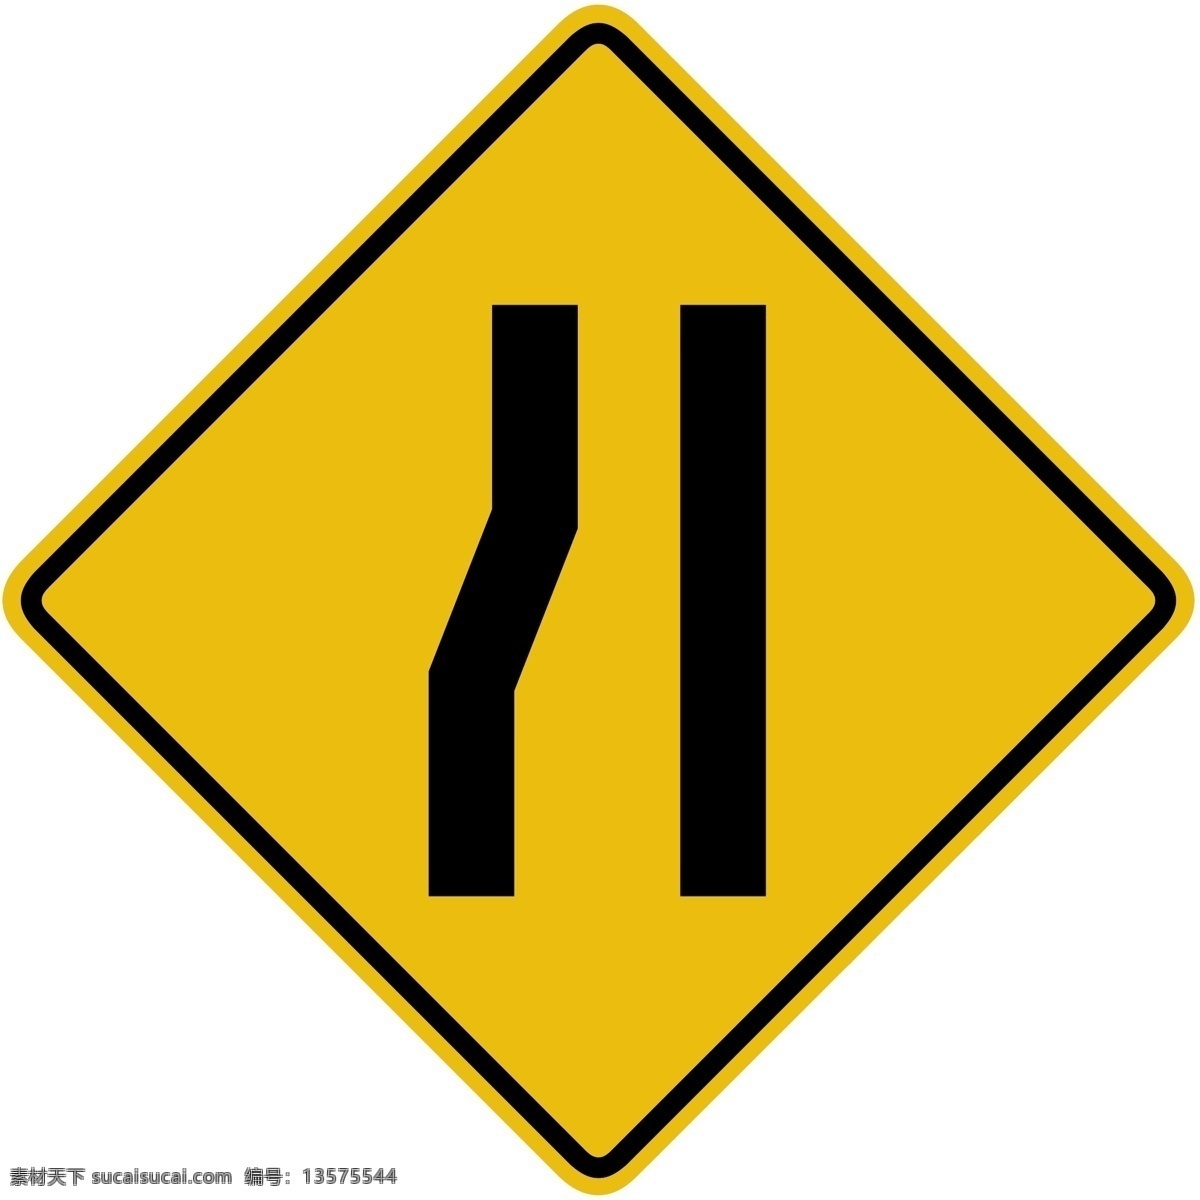 外国交通图标 左边变窄图标 标识 标志 简易图标 雕刻 镂空 pvc 指示牌 引导牌 公共场所图标 公共标识 公共区域标志 交通安全 交通提示 安全提示 道路图标 道路提示 警告图标 警示图标 提醒图标 黄色警告标识 左边车道变窄 合并车道 矢量图标 logo 标志图标 公共标识标志